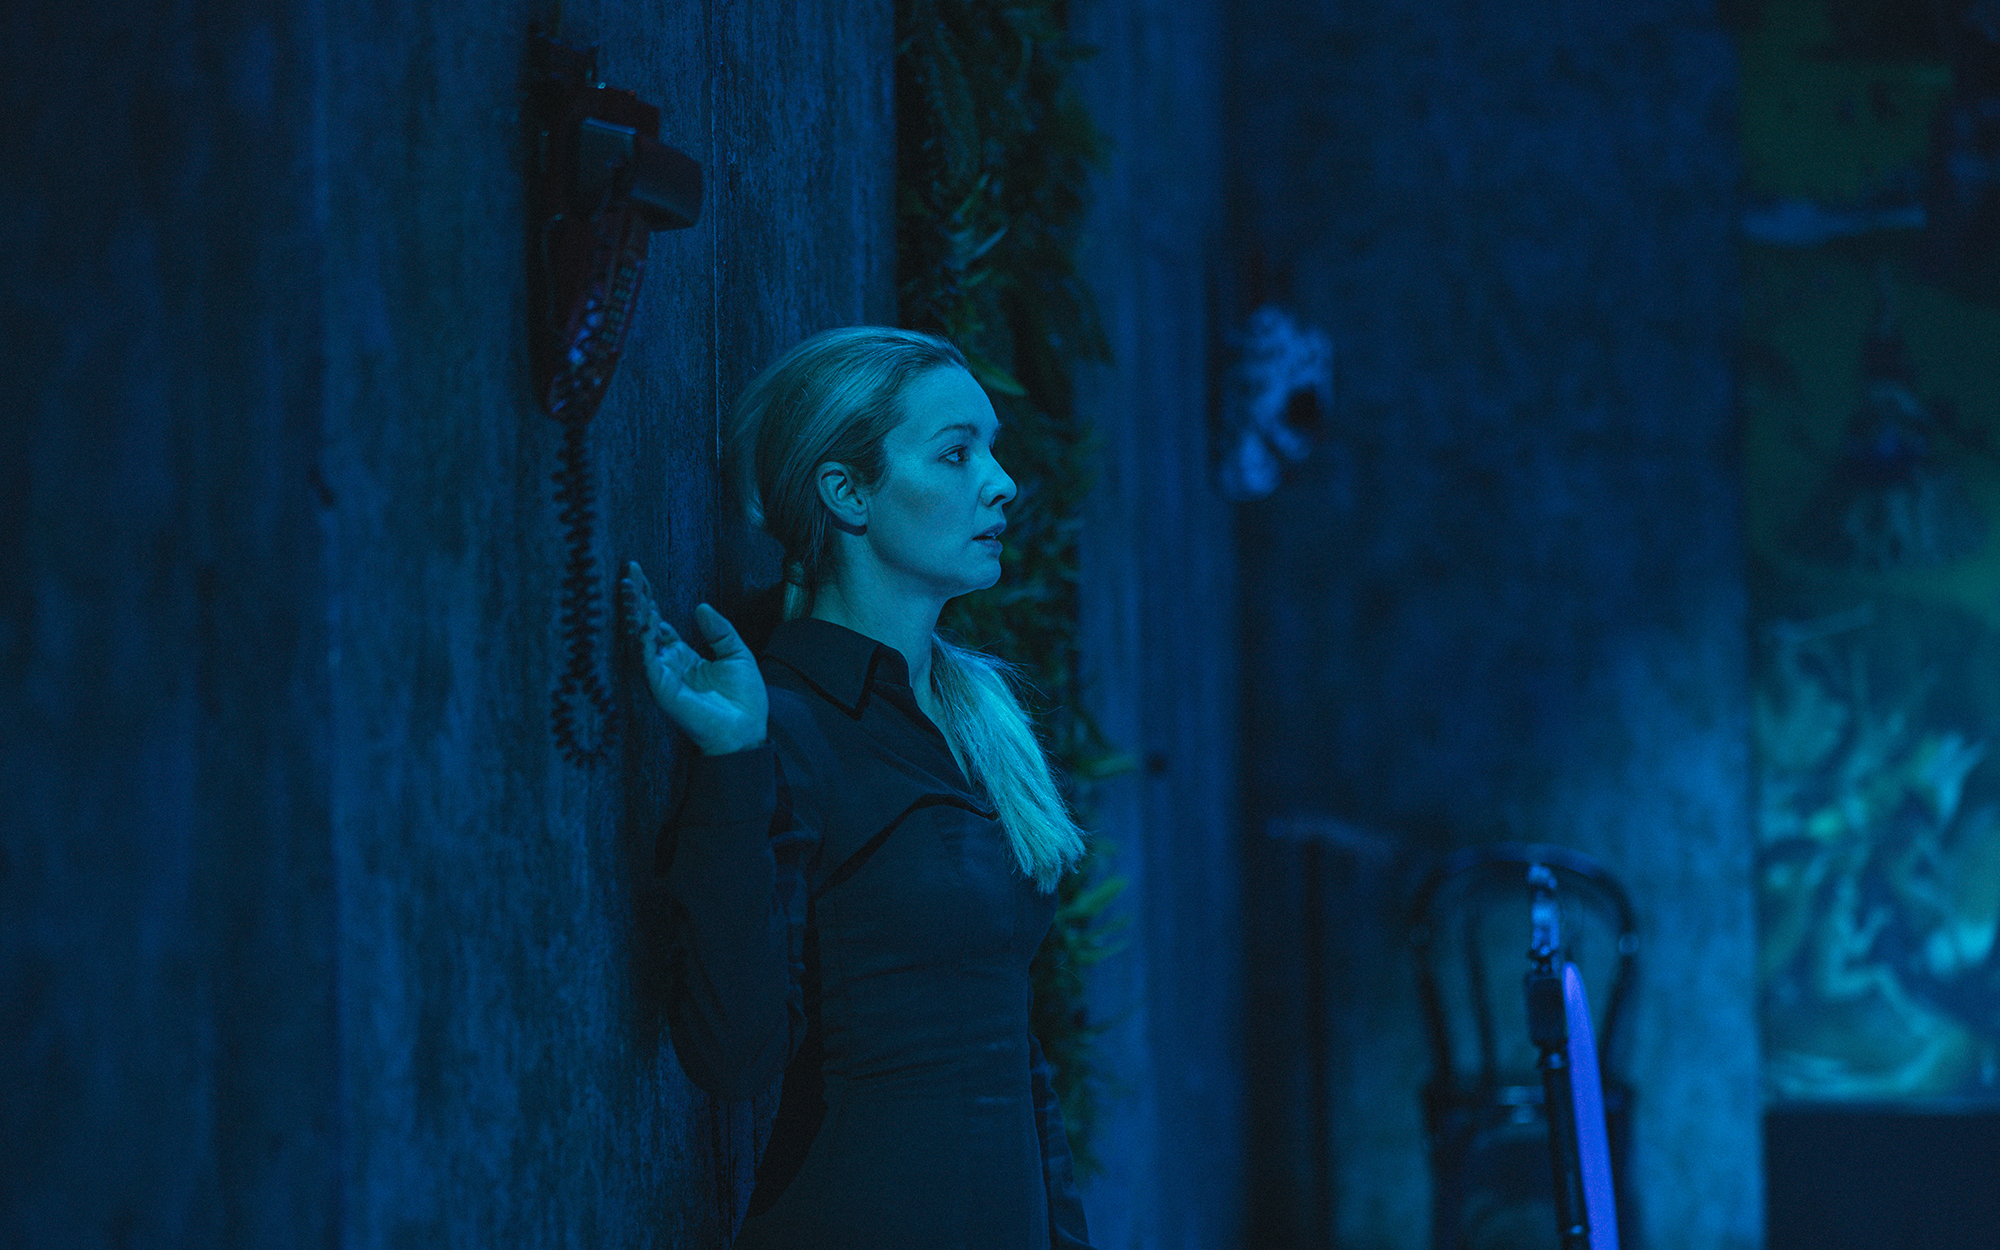 Ženska (Iva Krajnc Bagola) je s hrbtom naslonjena ob steno, z roko prestrašeno sega po stenskem telefonu. Na desni strani na steni visi ena od živalskih mask. Sobo obdaja hladna modra svetloba.